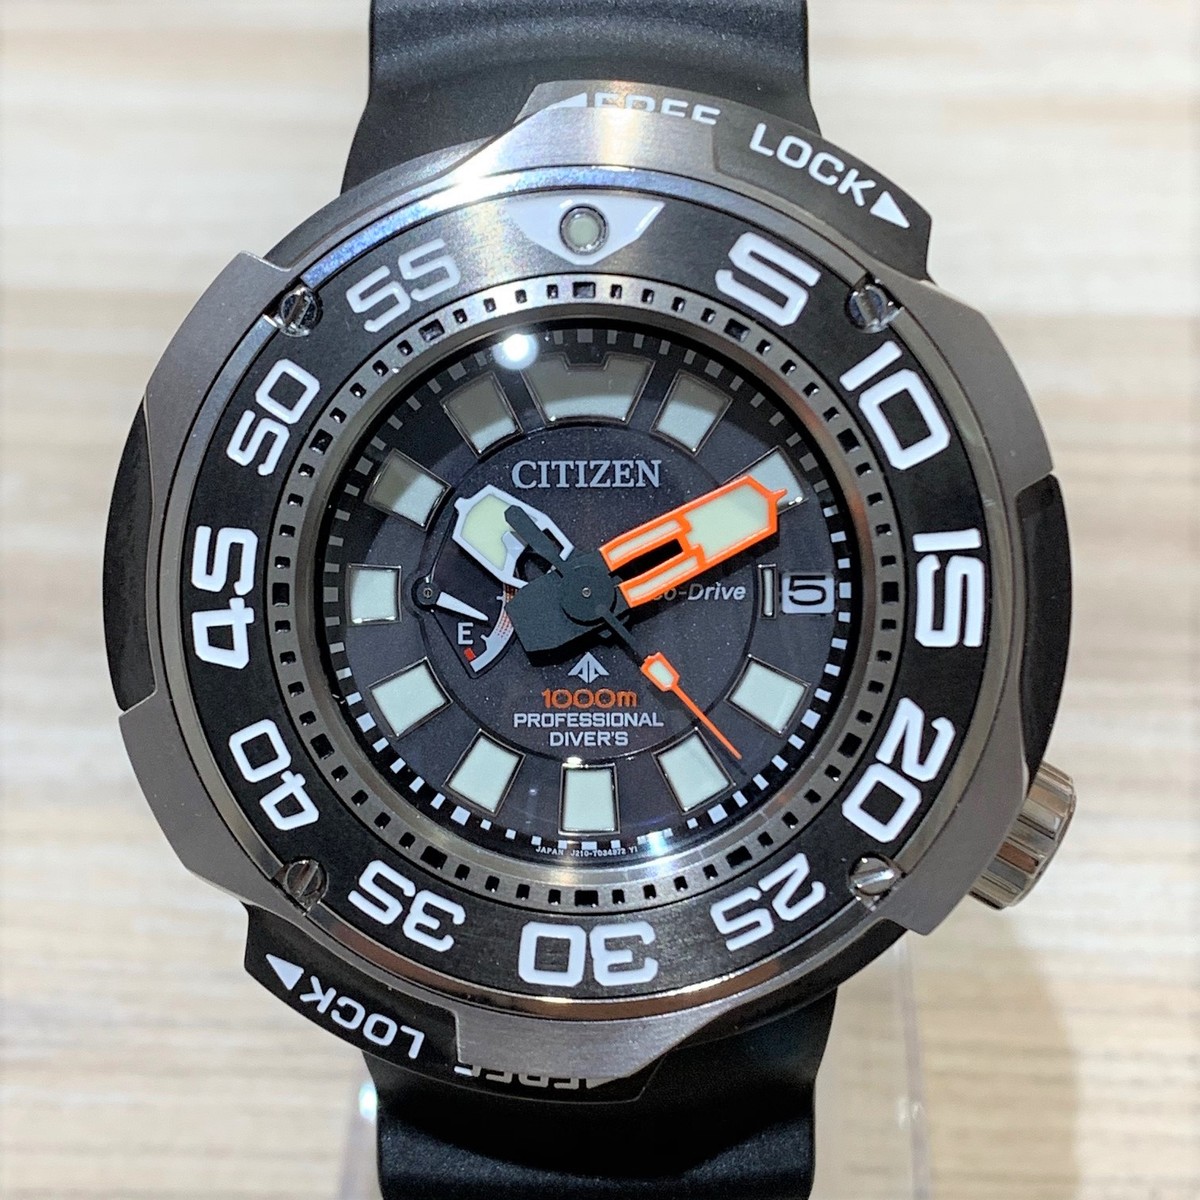 シチズンのBN7020-09E エコドライブ プロマスター 腕時計の買取実績です。